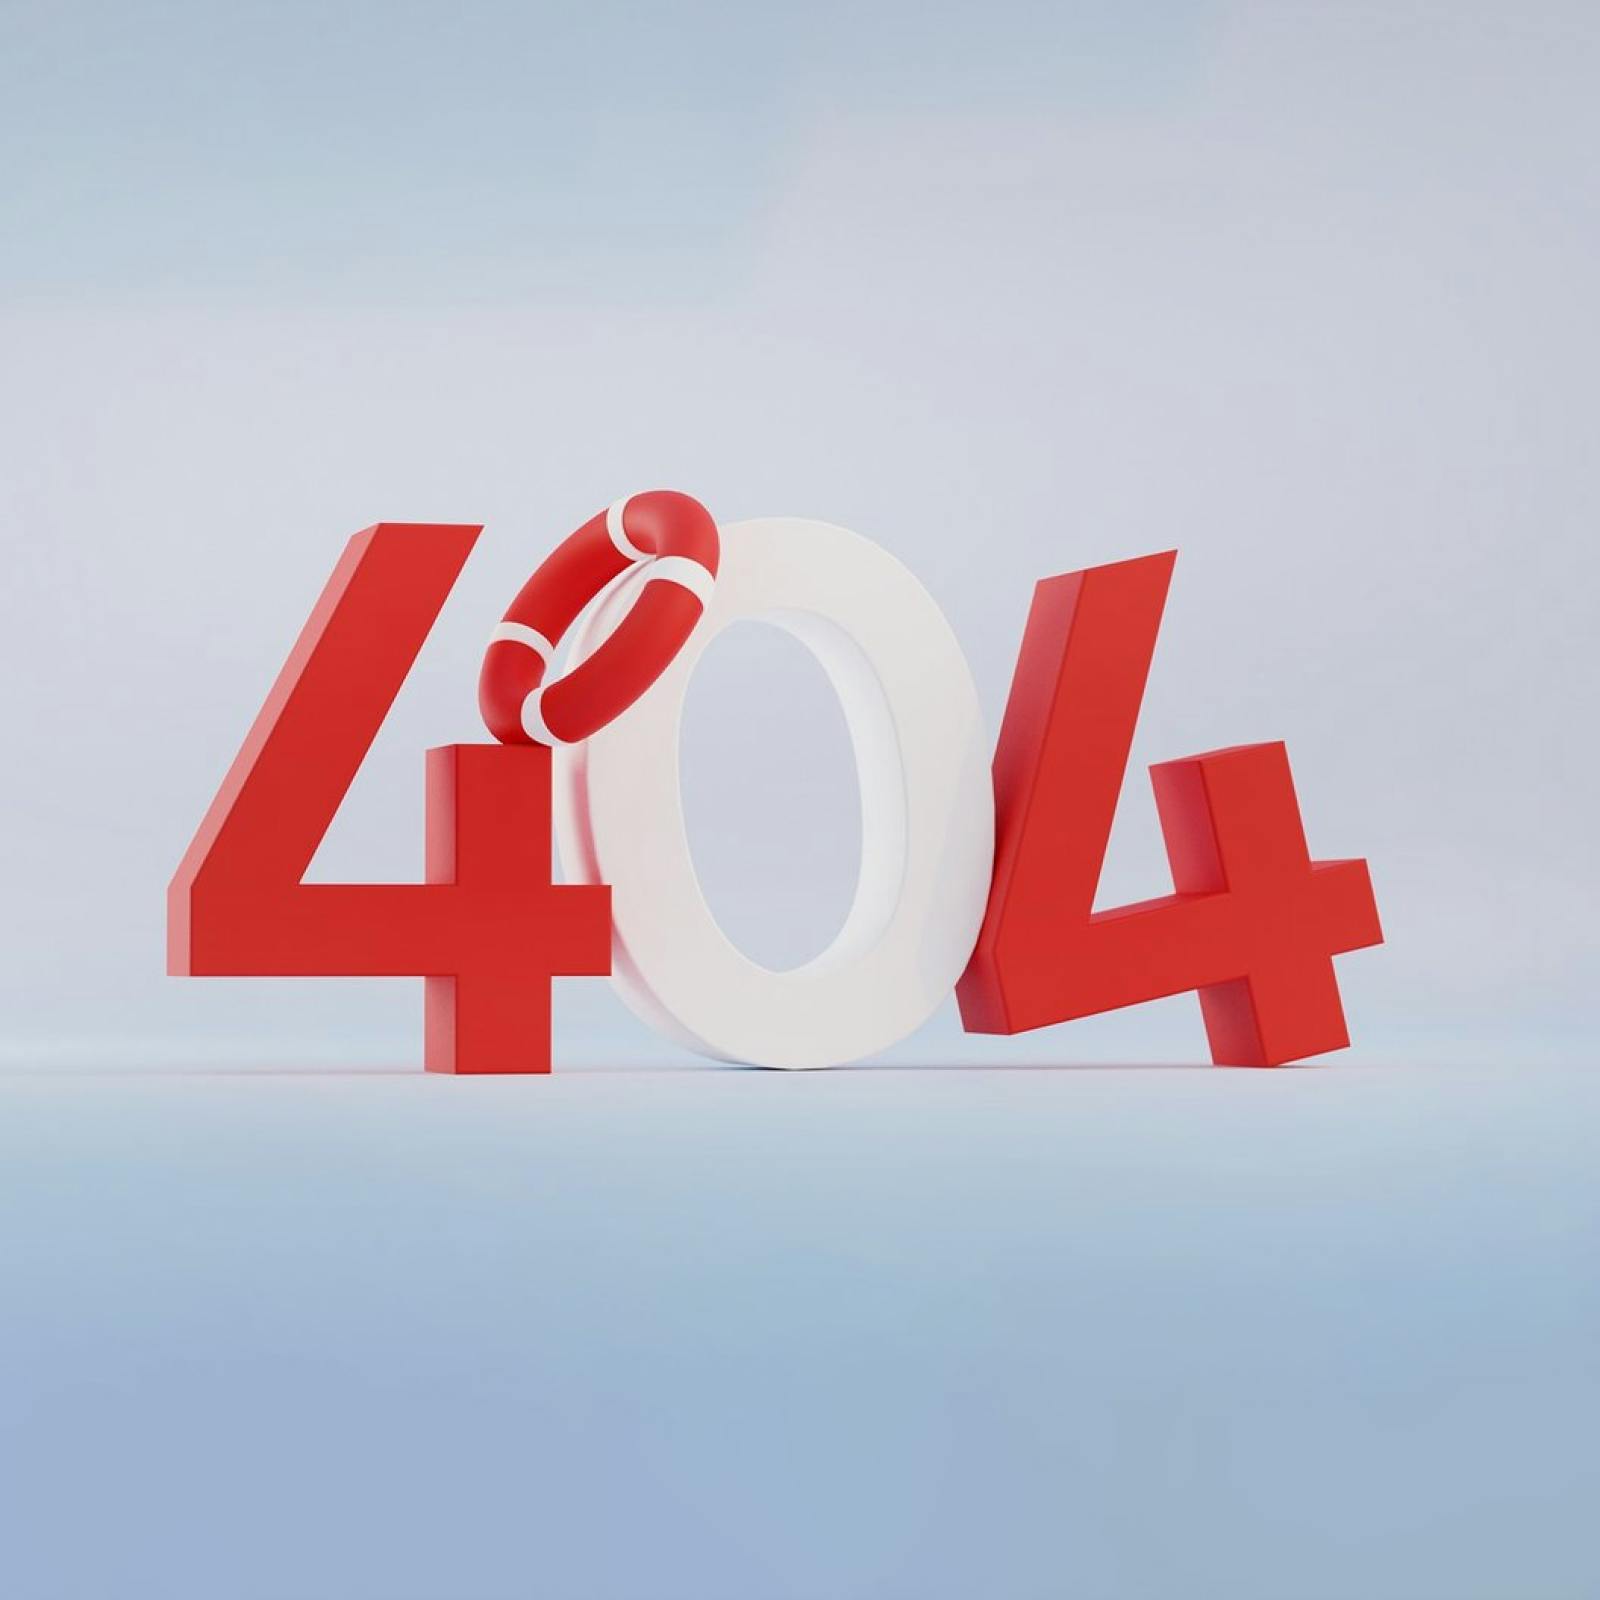 3D-grafik för 404-sida med livboj runt 0:an